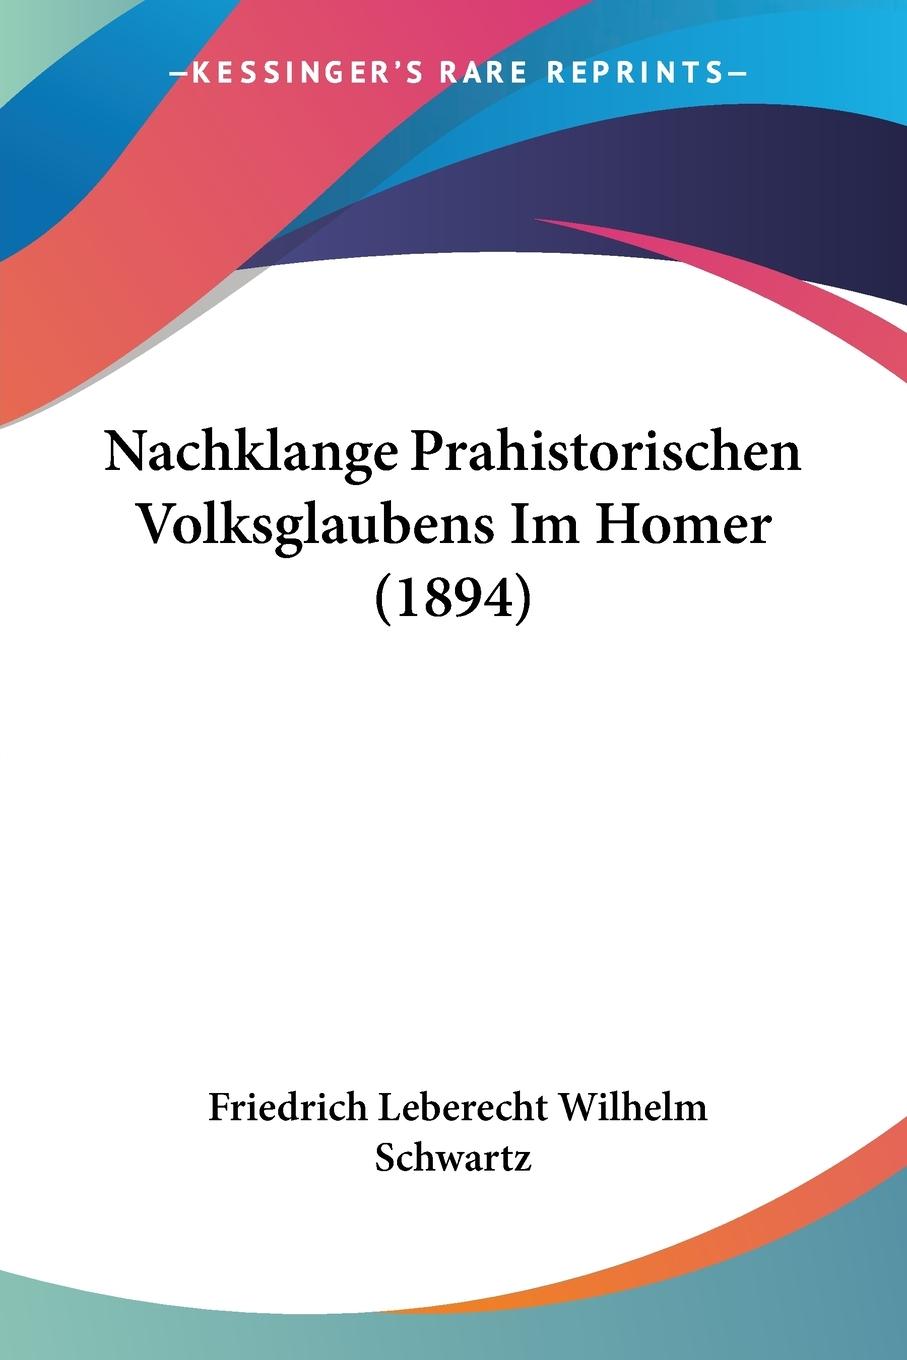 Nachklange Prahistorischen Volksglaubens Im Homer (1894) - Schwartz, Friedrich Leberecht Wilhelm